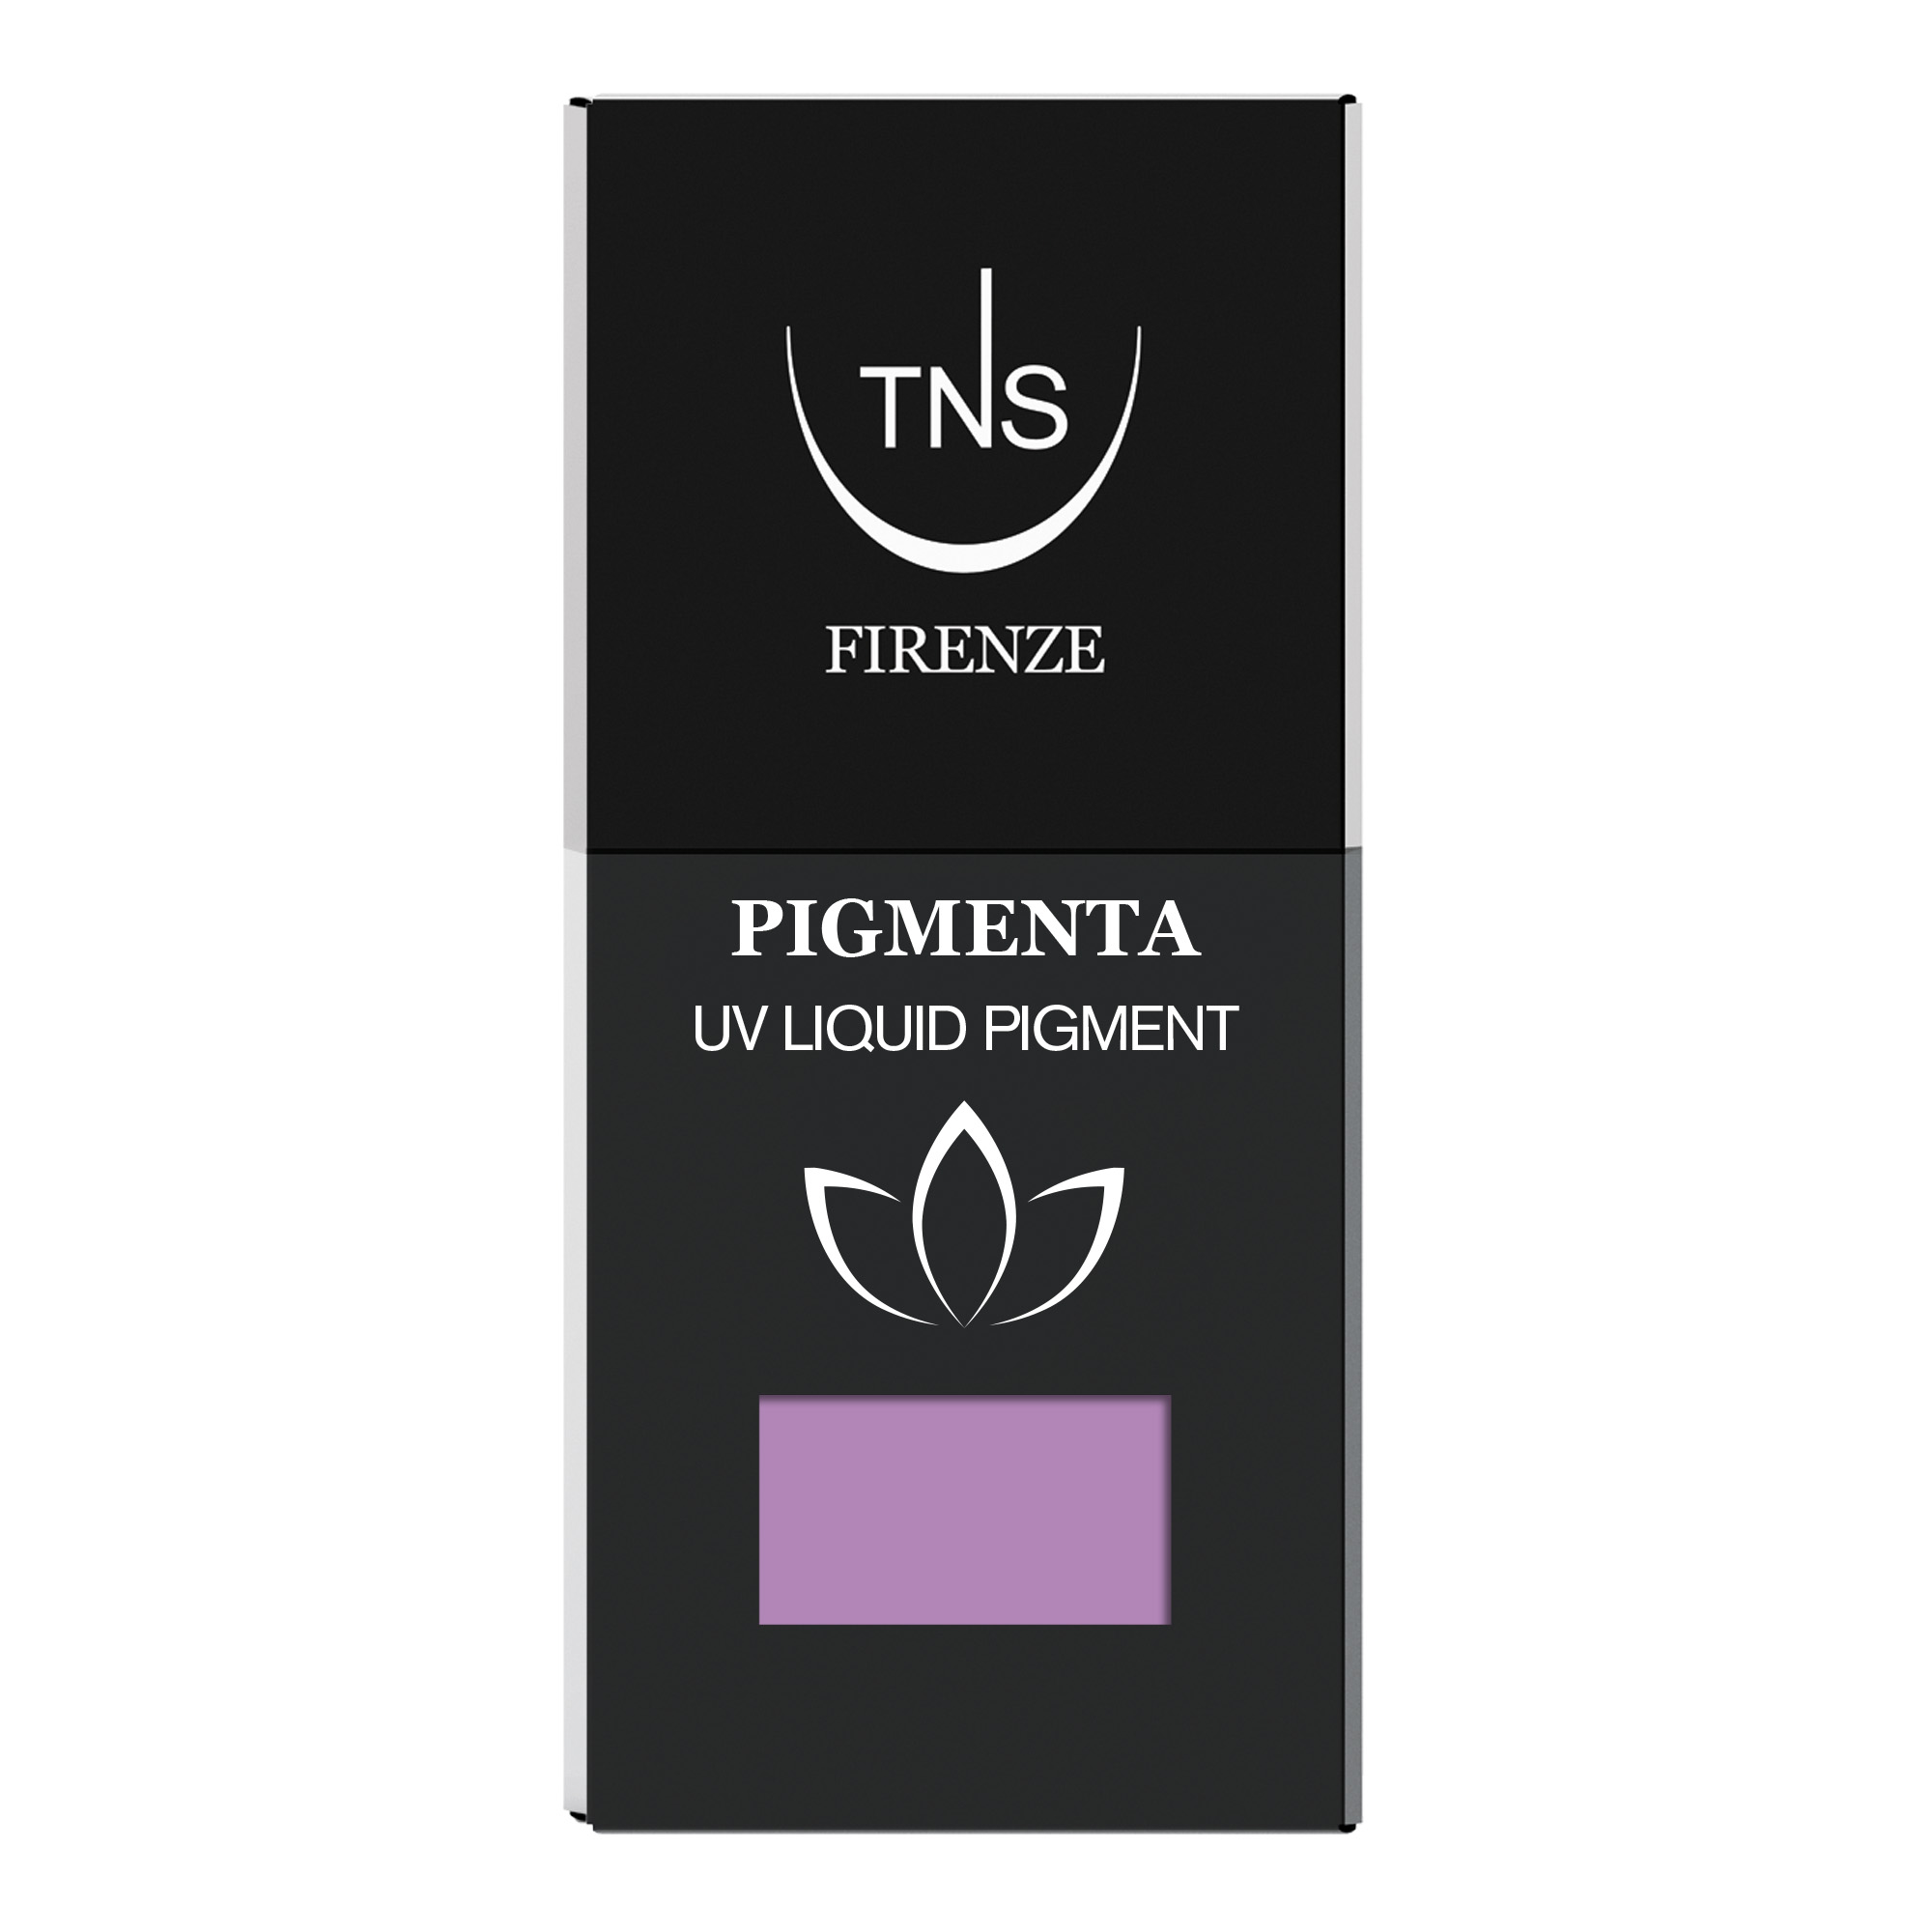 UV Liquid Pigment Anemone Lilac 10 ml Pigmenta TNS